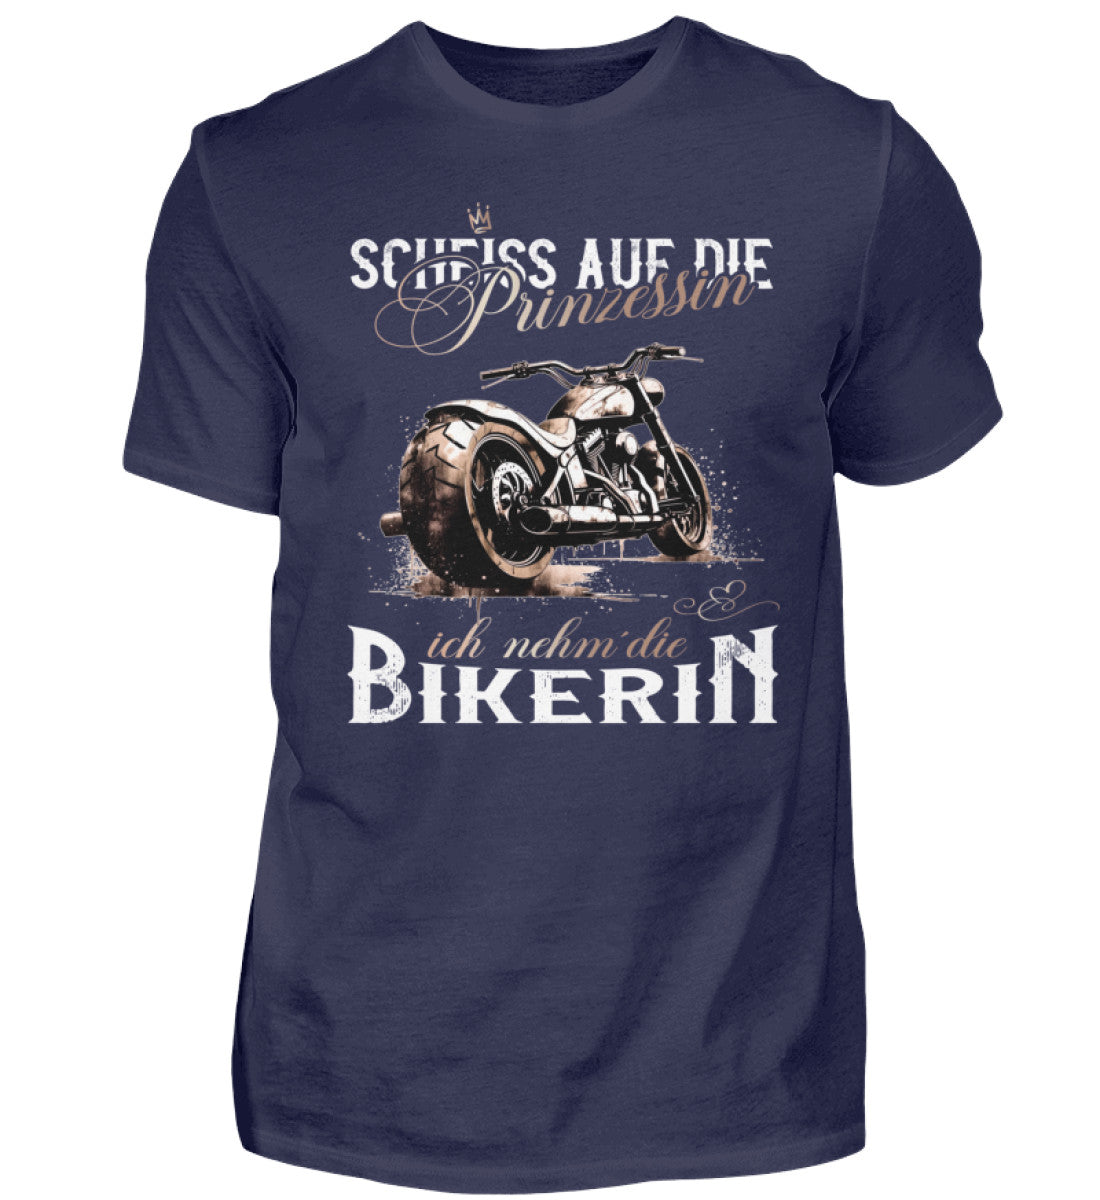 Ein Biker T-Shirt für Motorradfahrer von Wingbikers mit dem Aufdruck, Scheiß auf die Prinzessin - Ich nehm´ die Bikerin - in navy blau.